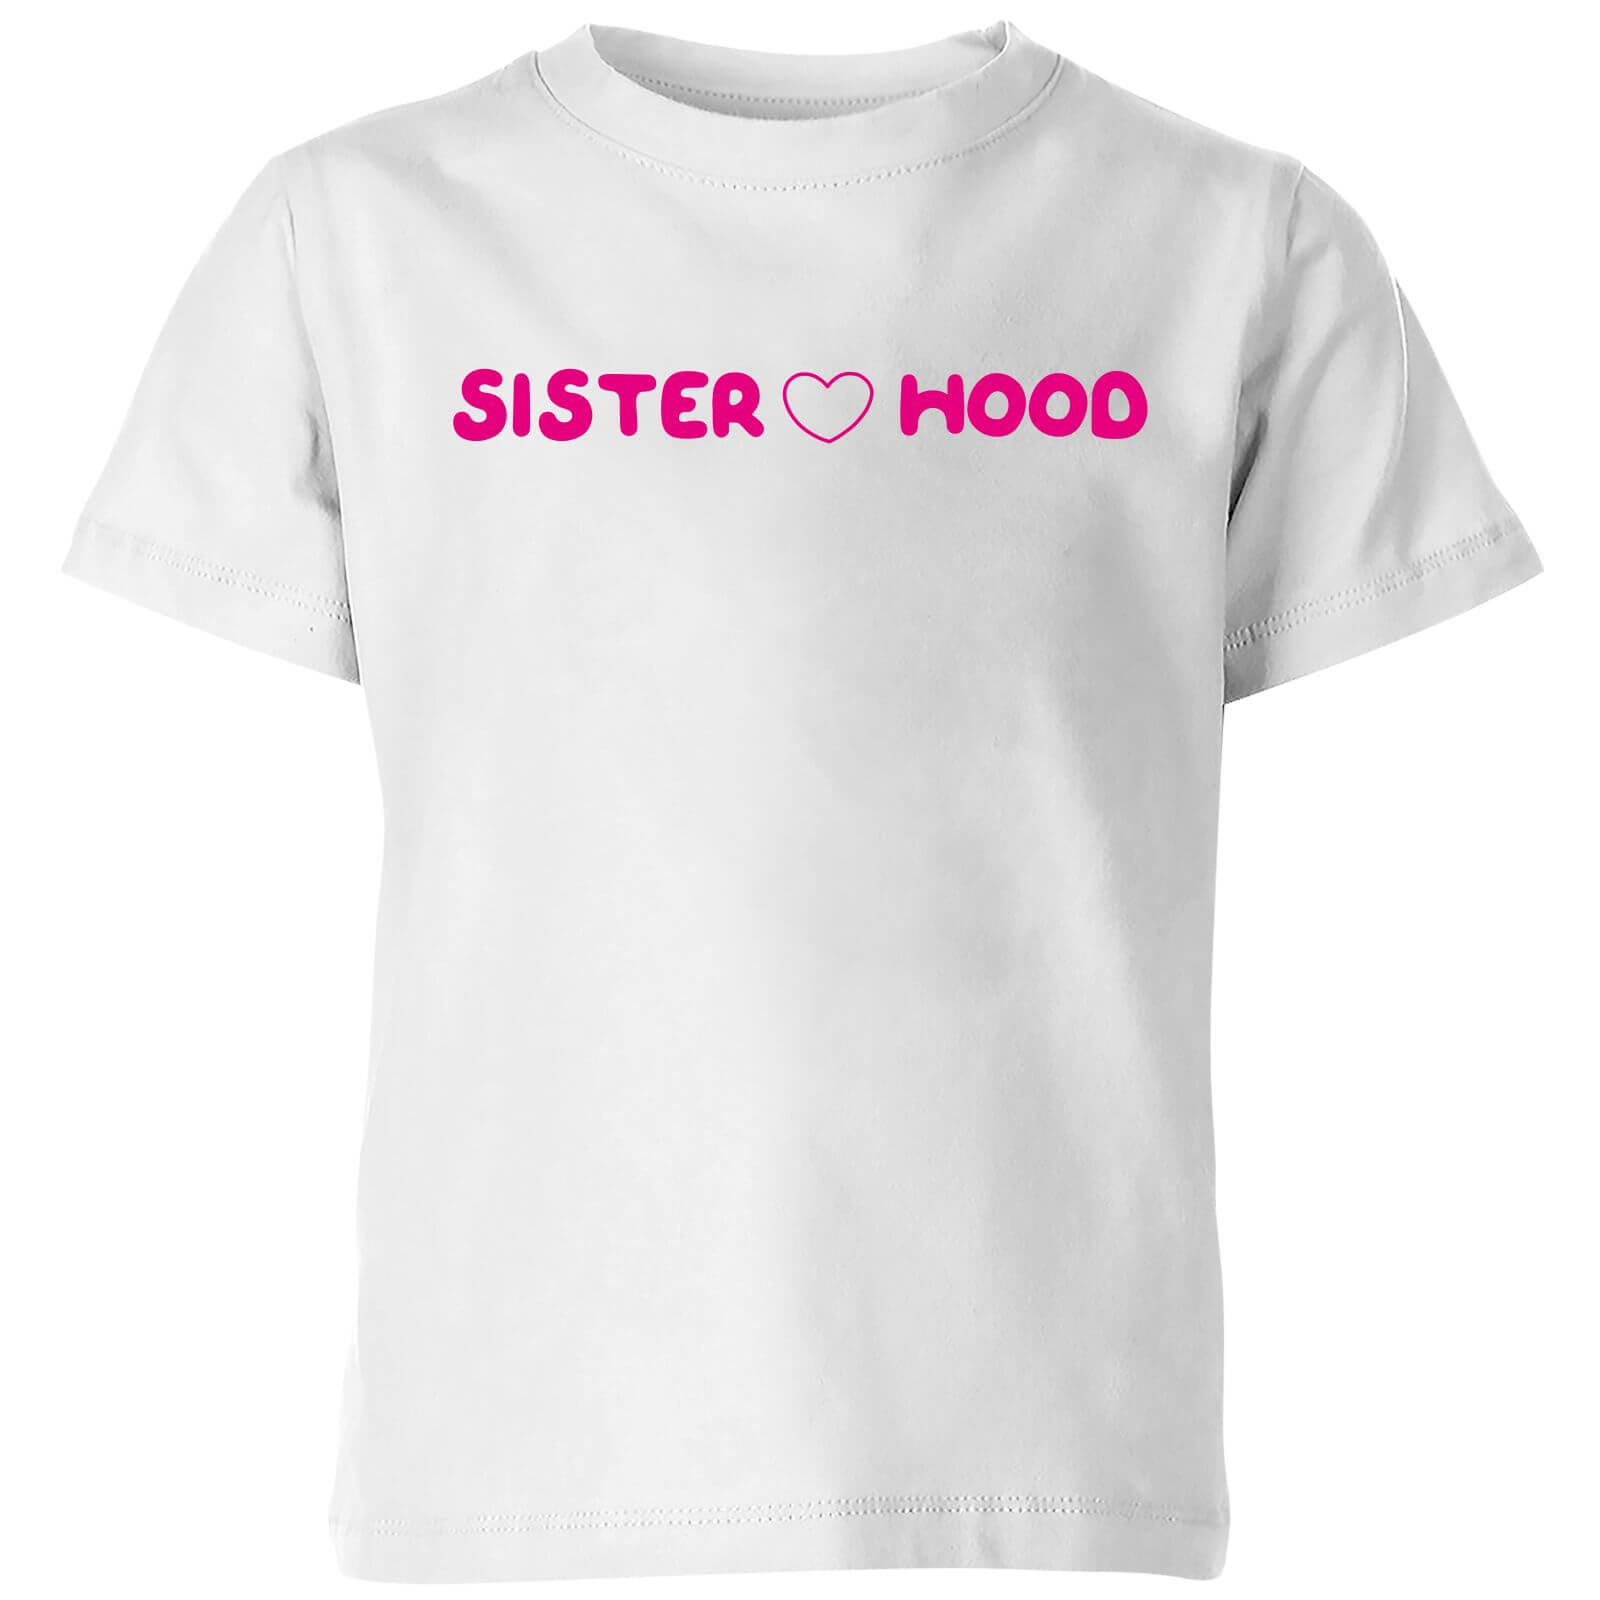 Mr Men & Little Miss Little Miss Sister Hood Kids' T-Shirt - White - 3-4 Years - White